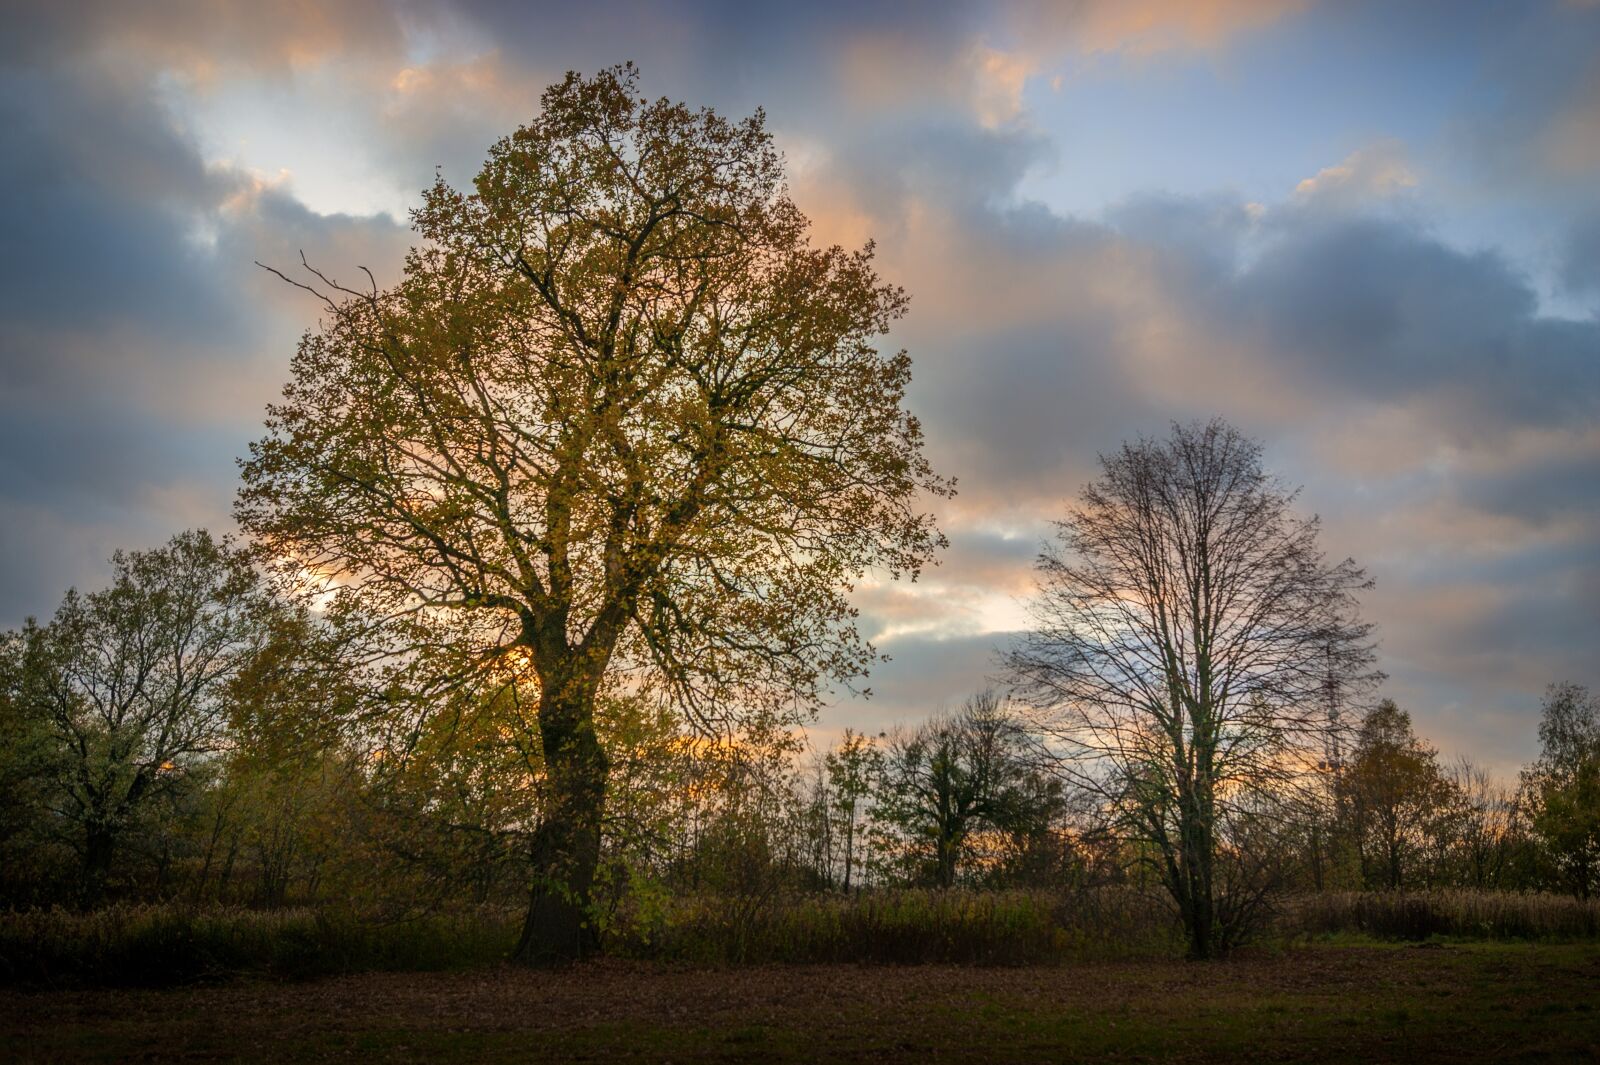 Sony Alpha DSLR-A290 sample photo. Tree, sunset, sky photography